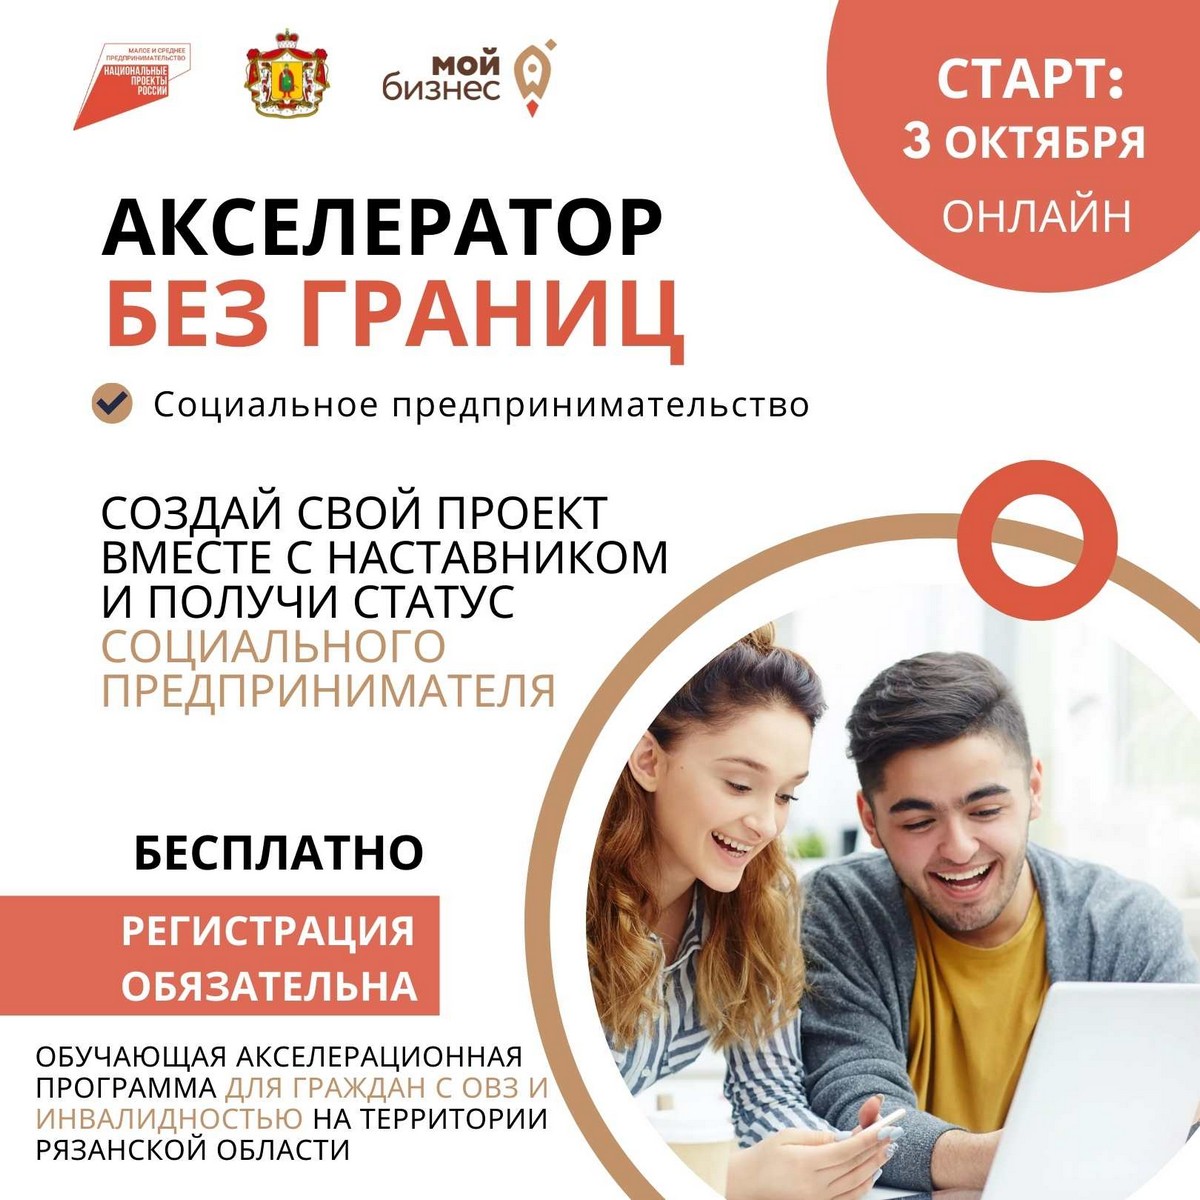 В Рязанской области для граждан с ограниченными возможностями здоровья и инвалидностью стартует бесплатная обучающая онлайн-программа